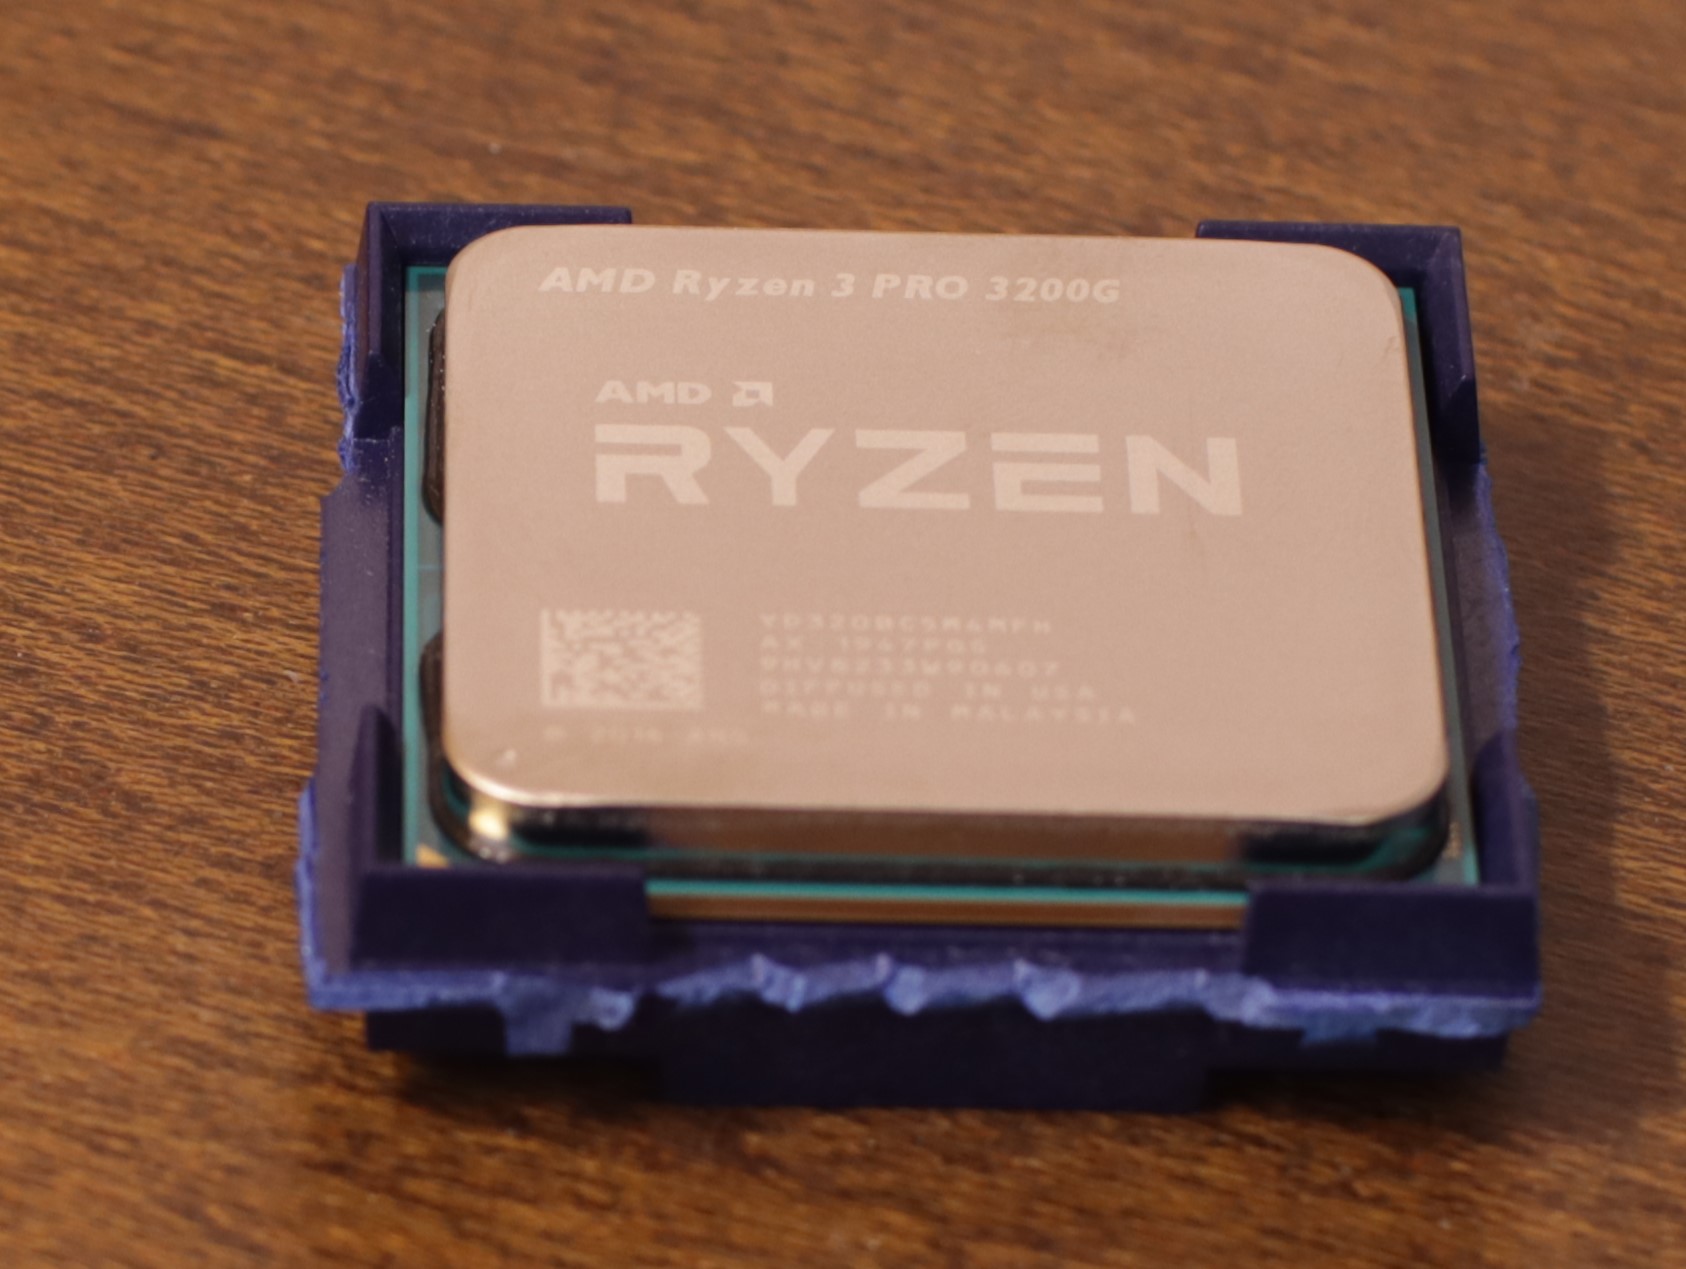 3 pro 3200g. Ryzen 3 3200g. Процессор AMD Ryzen 3 3200g. Ryzen 3 Pro 3200g процессор. AMD Ryzen 3 3200g OEM.